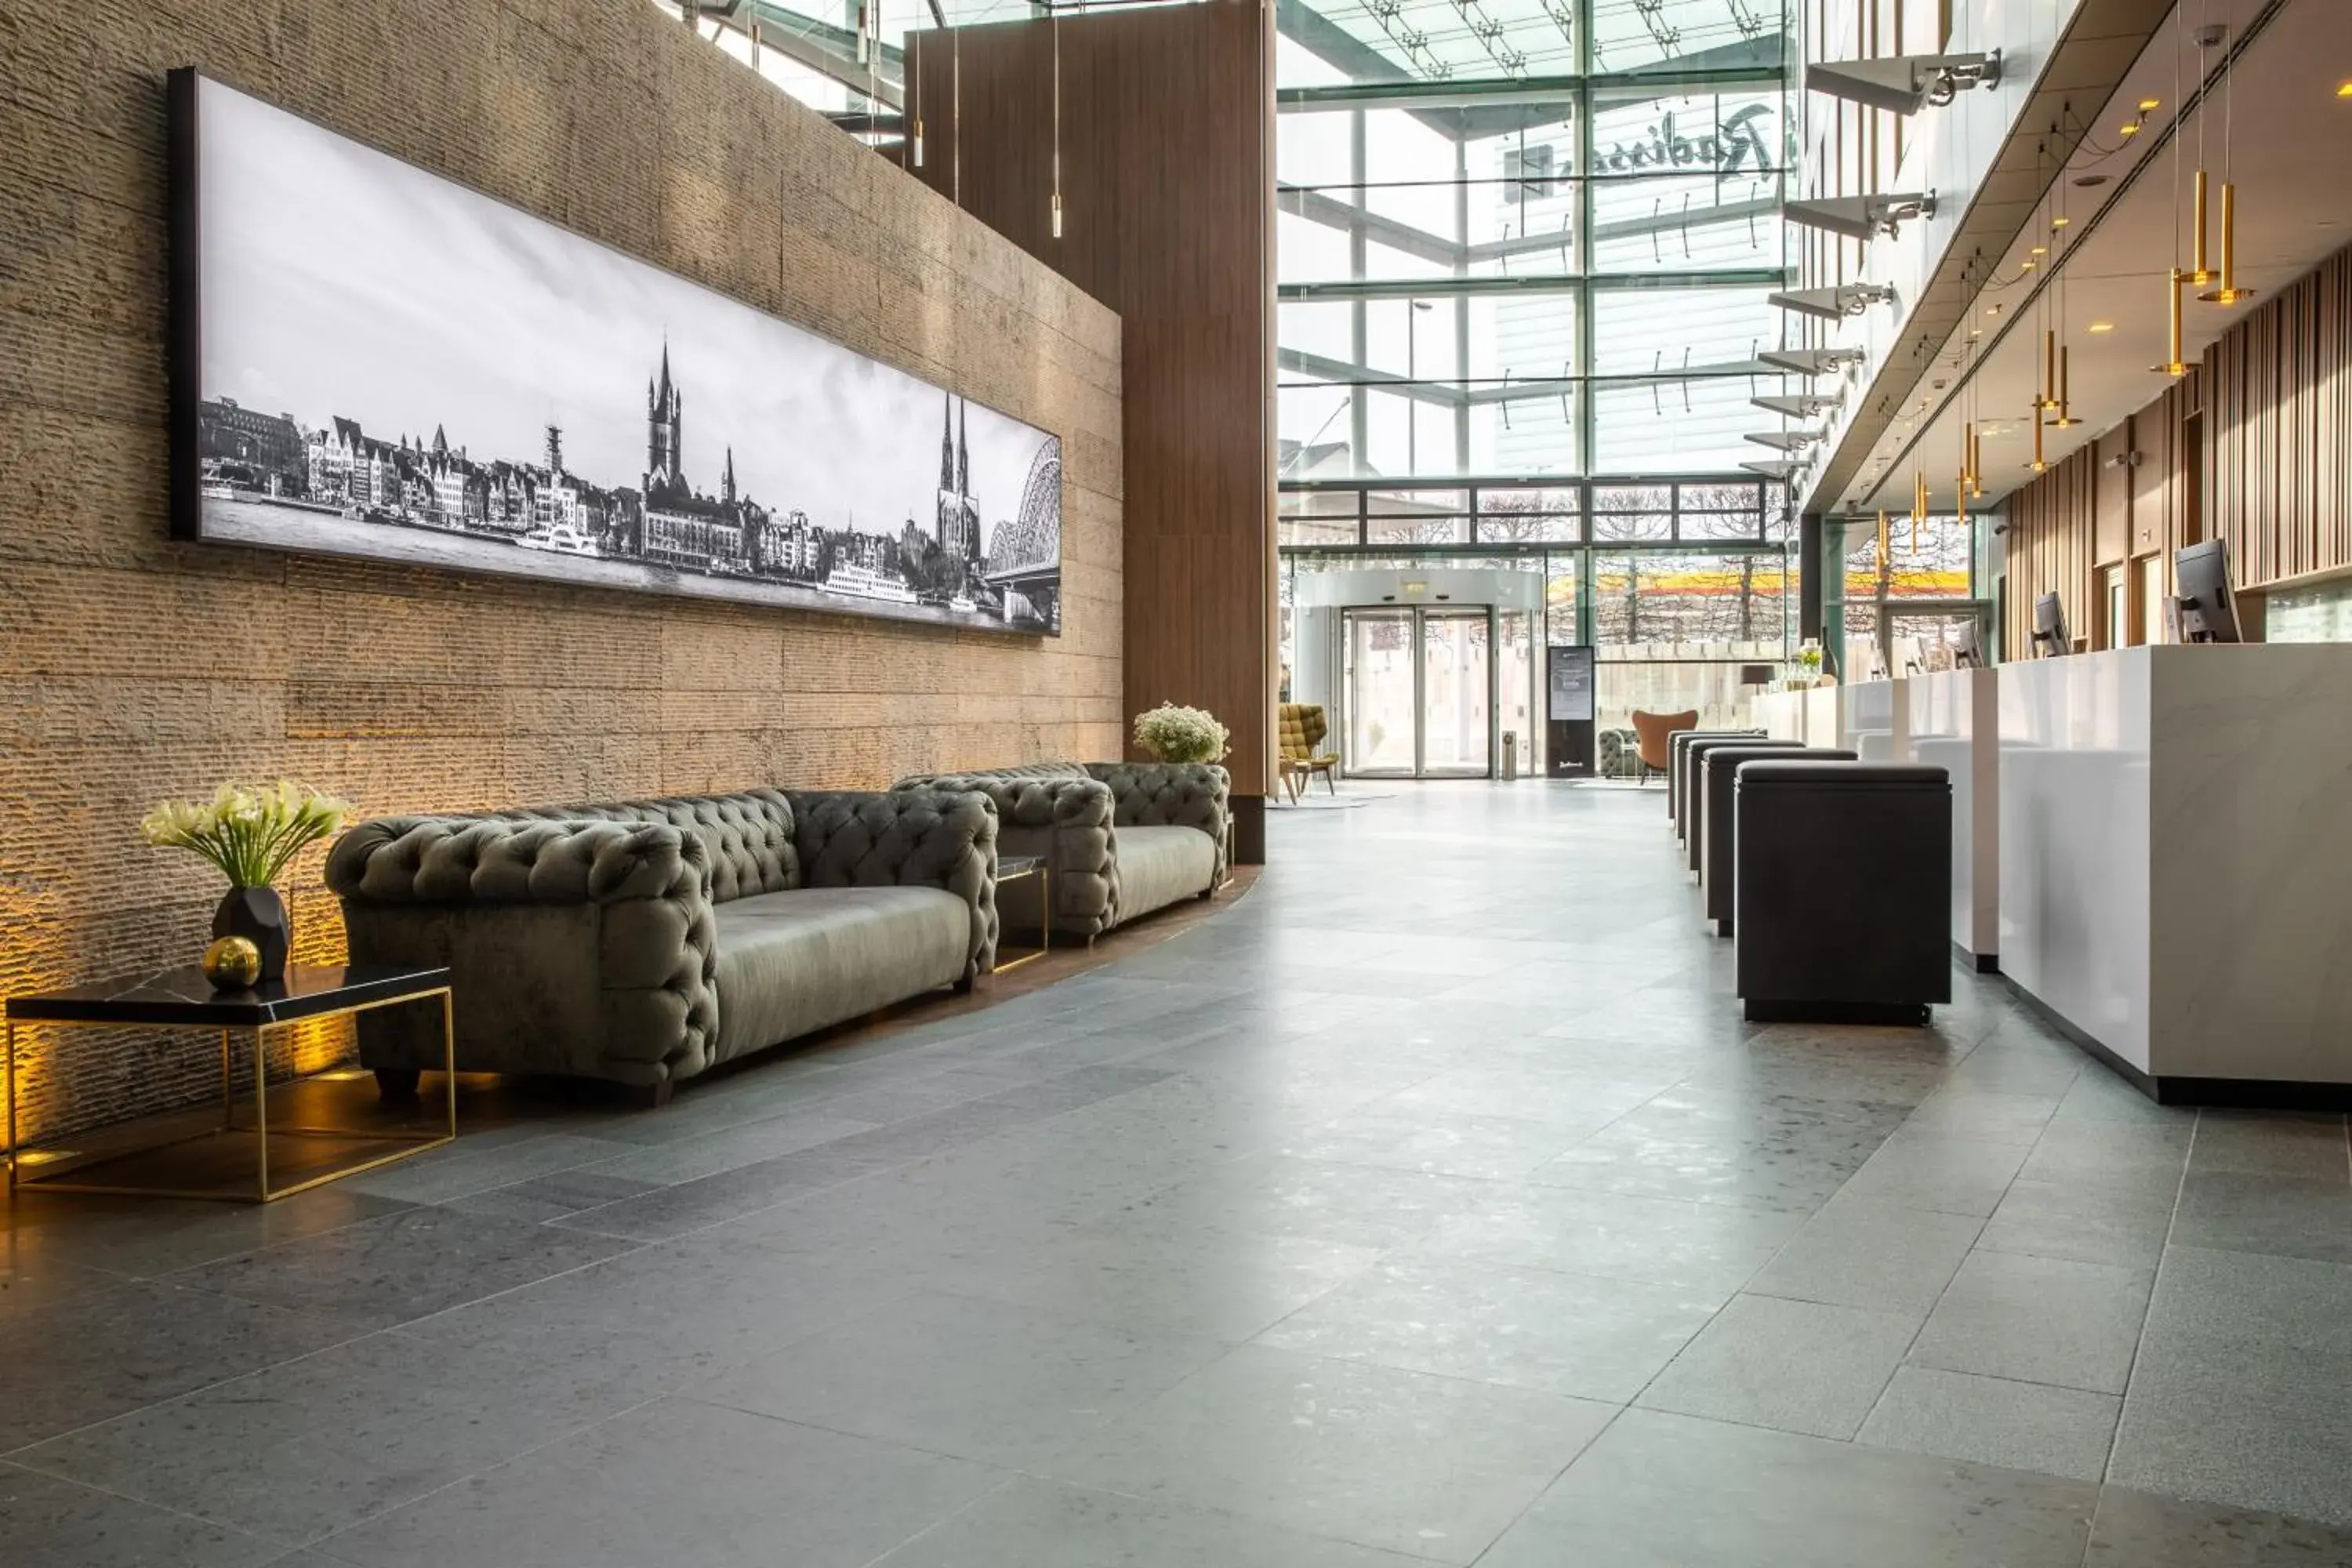 Lobby or reception, Lobby/Reception in Radisson Blu Hotel, Cologne